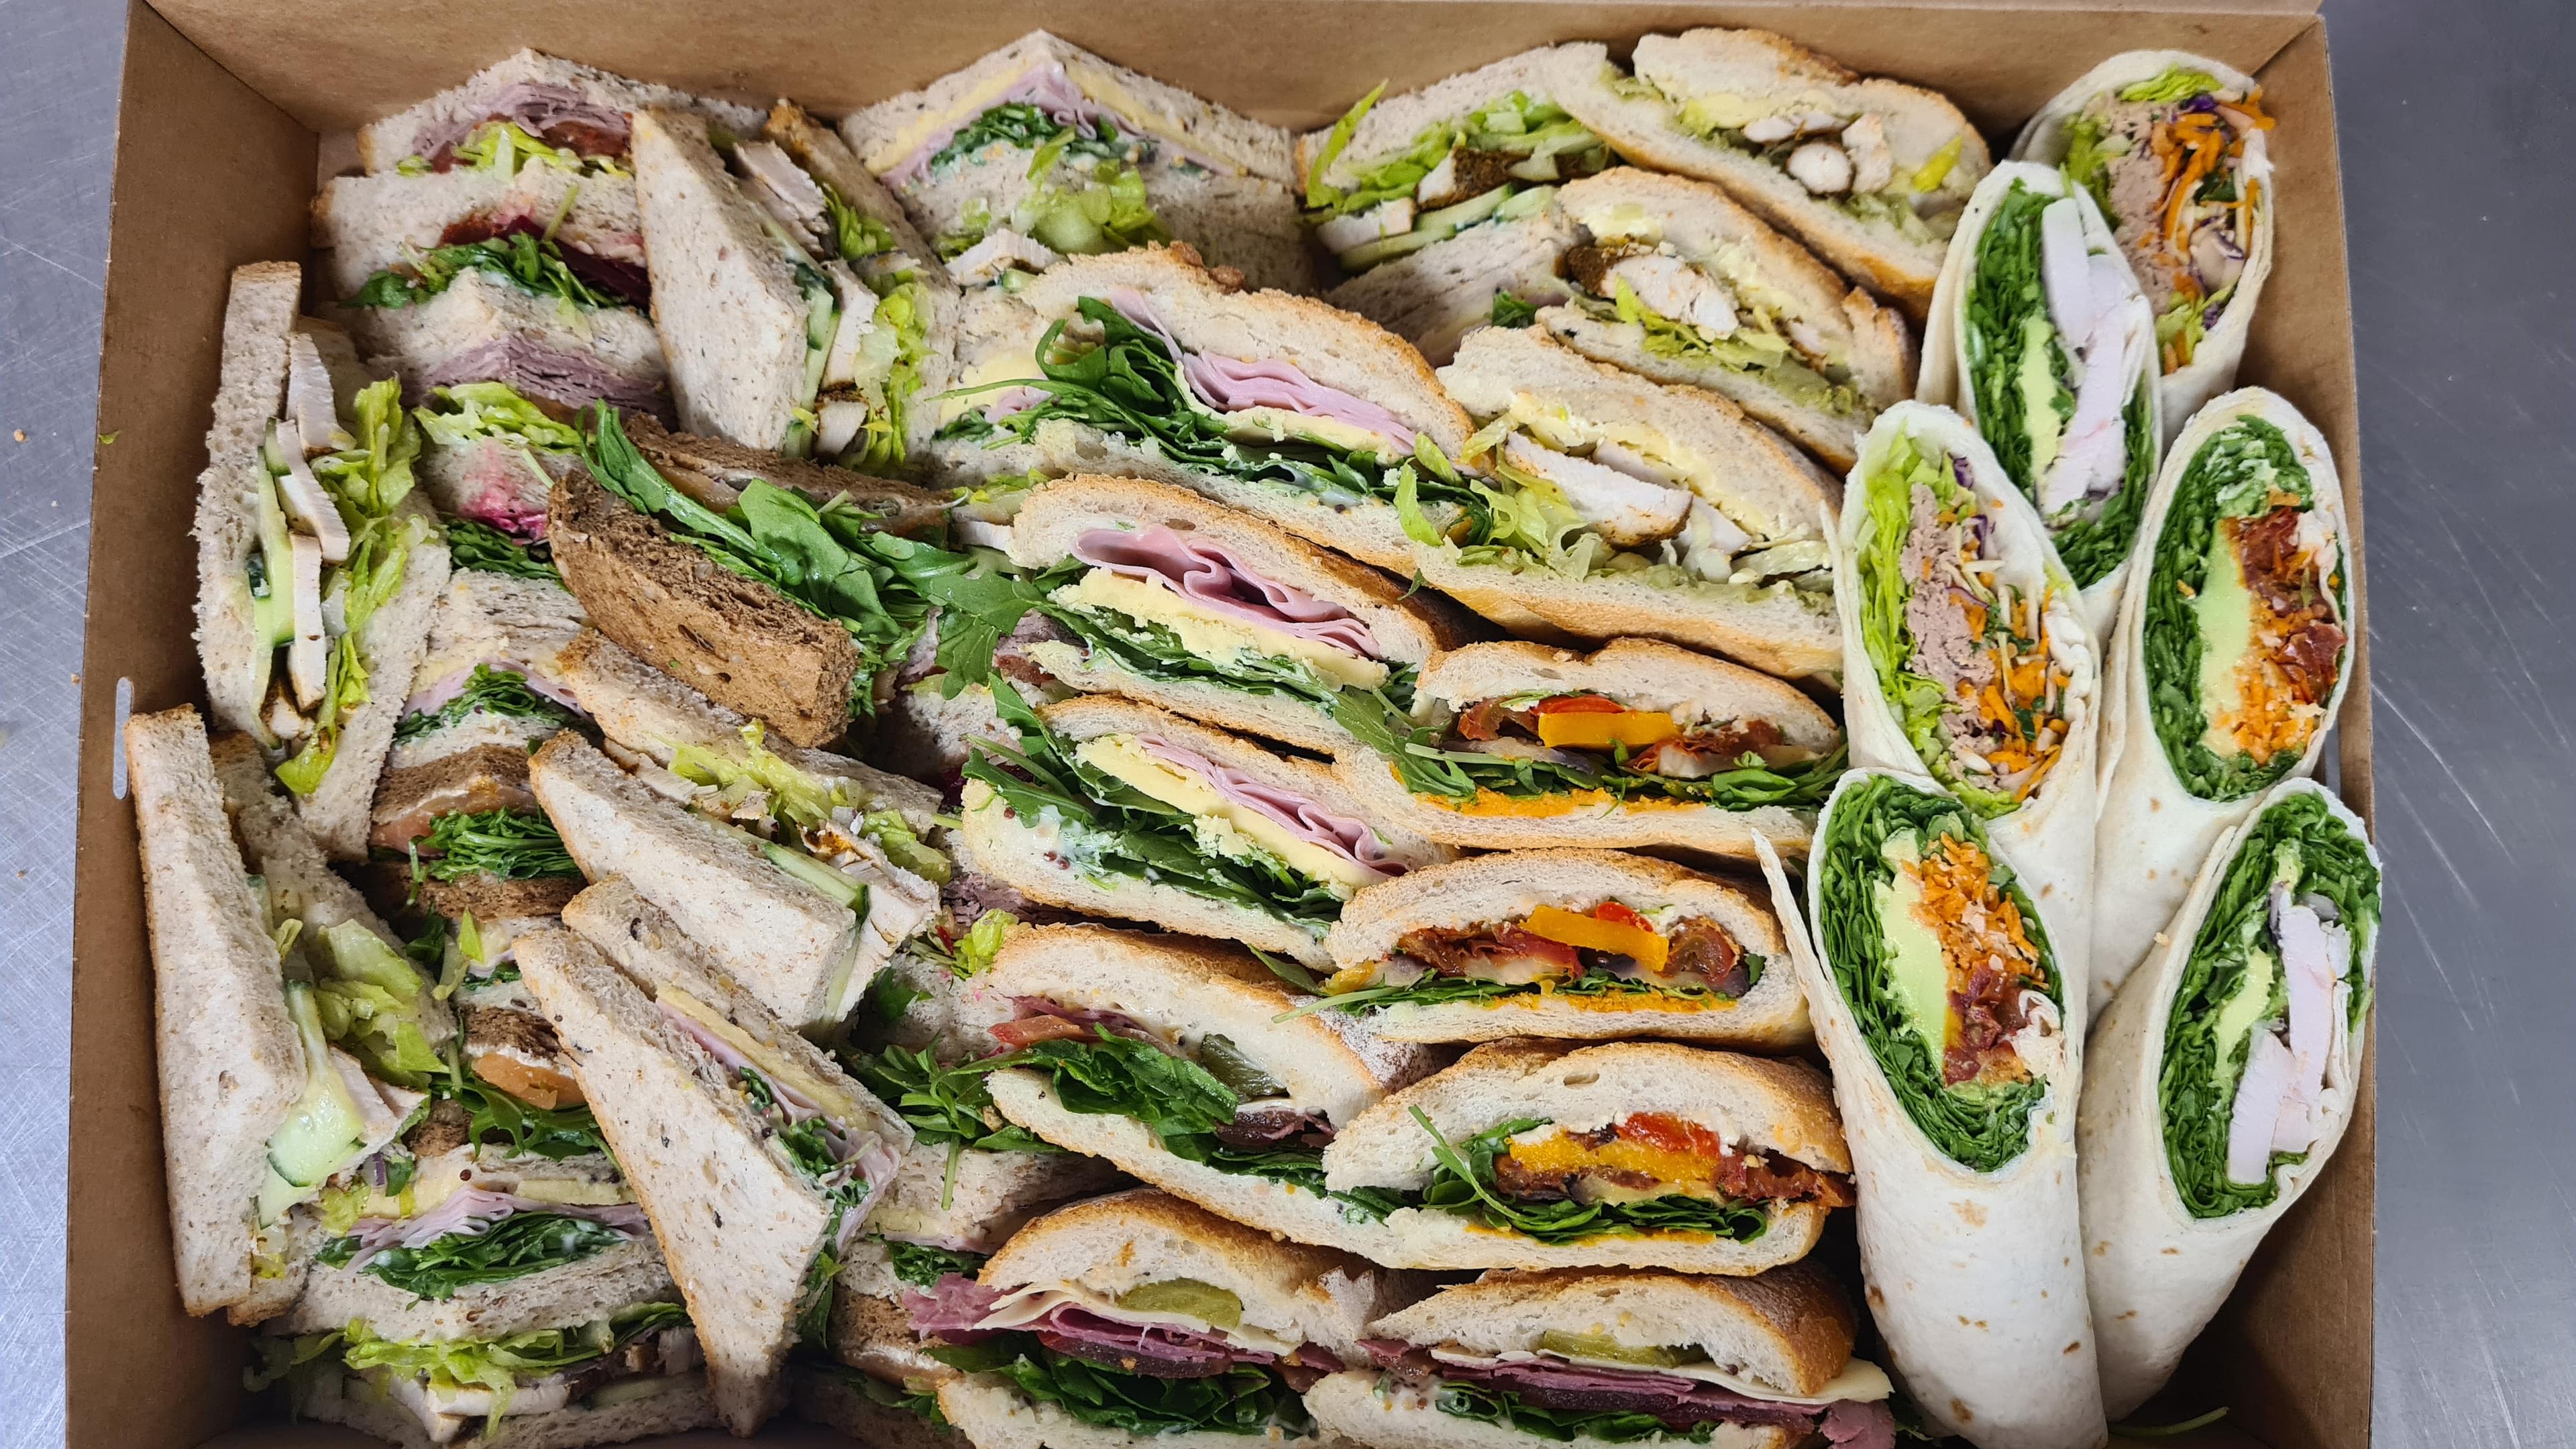 Sandwich & Wrap Selection